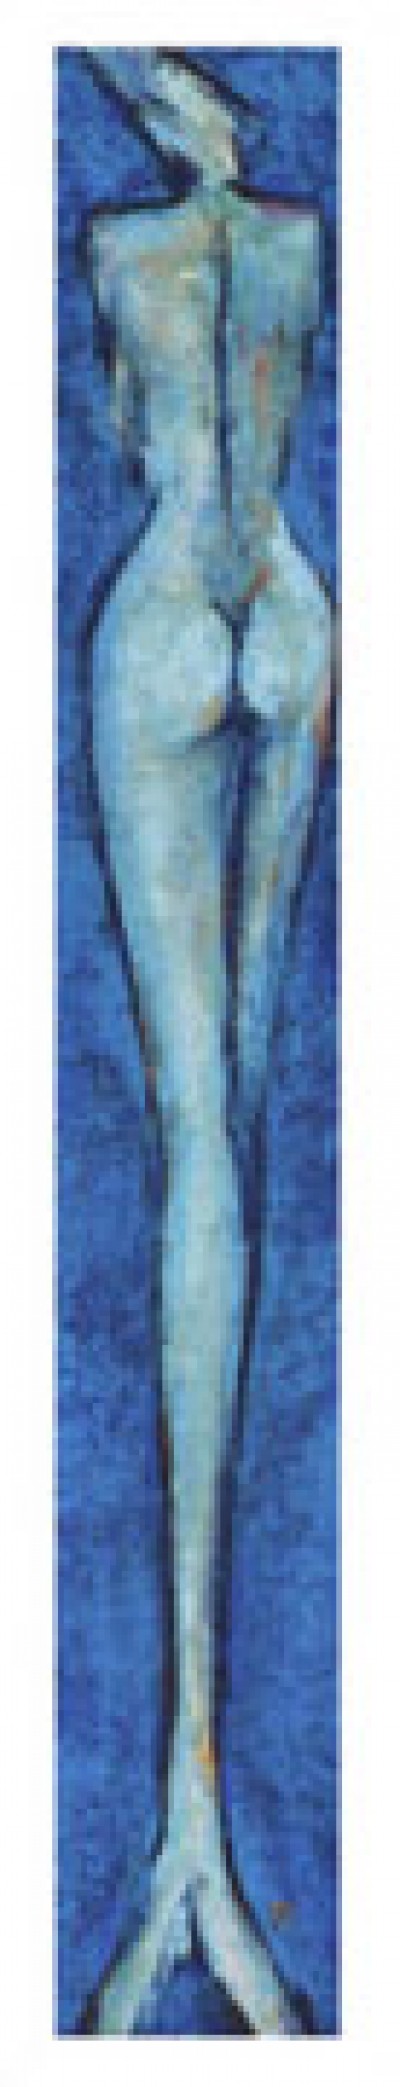 Franz Ruzicka, Medusa (Akt, Gorgone, Ungeheuer, nackt, Rückenakt, schlank, Figurativ, Mythologie, Modern, People & Eros, dekorativ, Malerei, Treppenhaus, Schlafzimmer, blau)